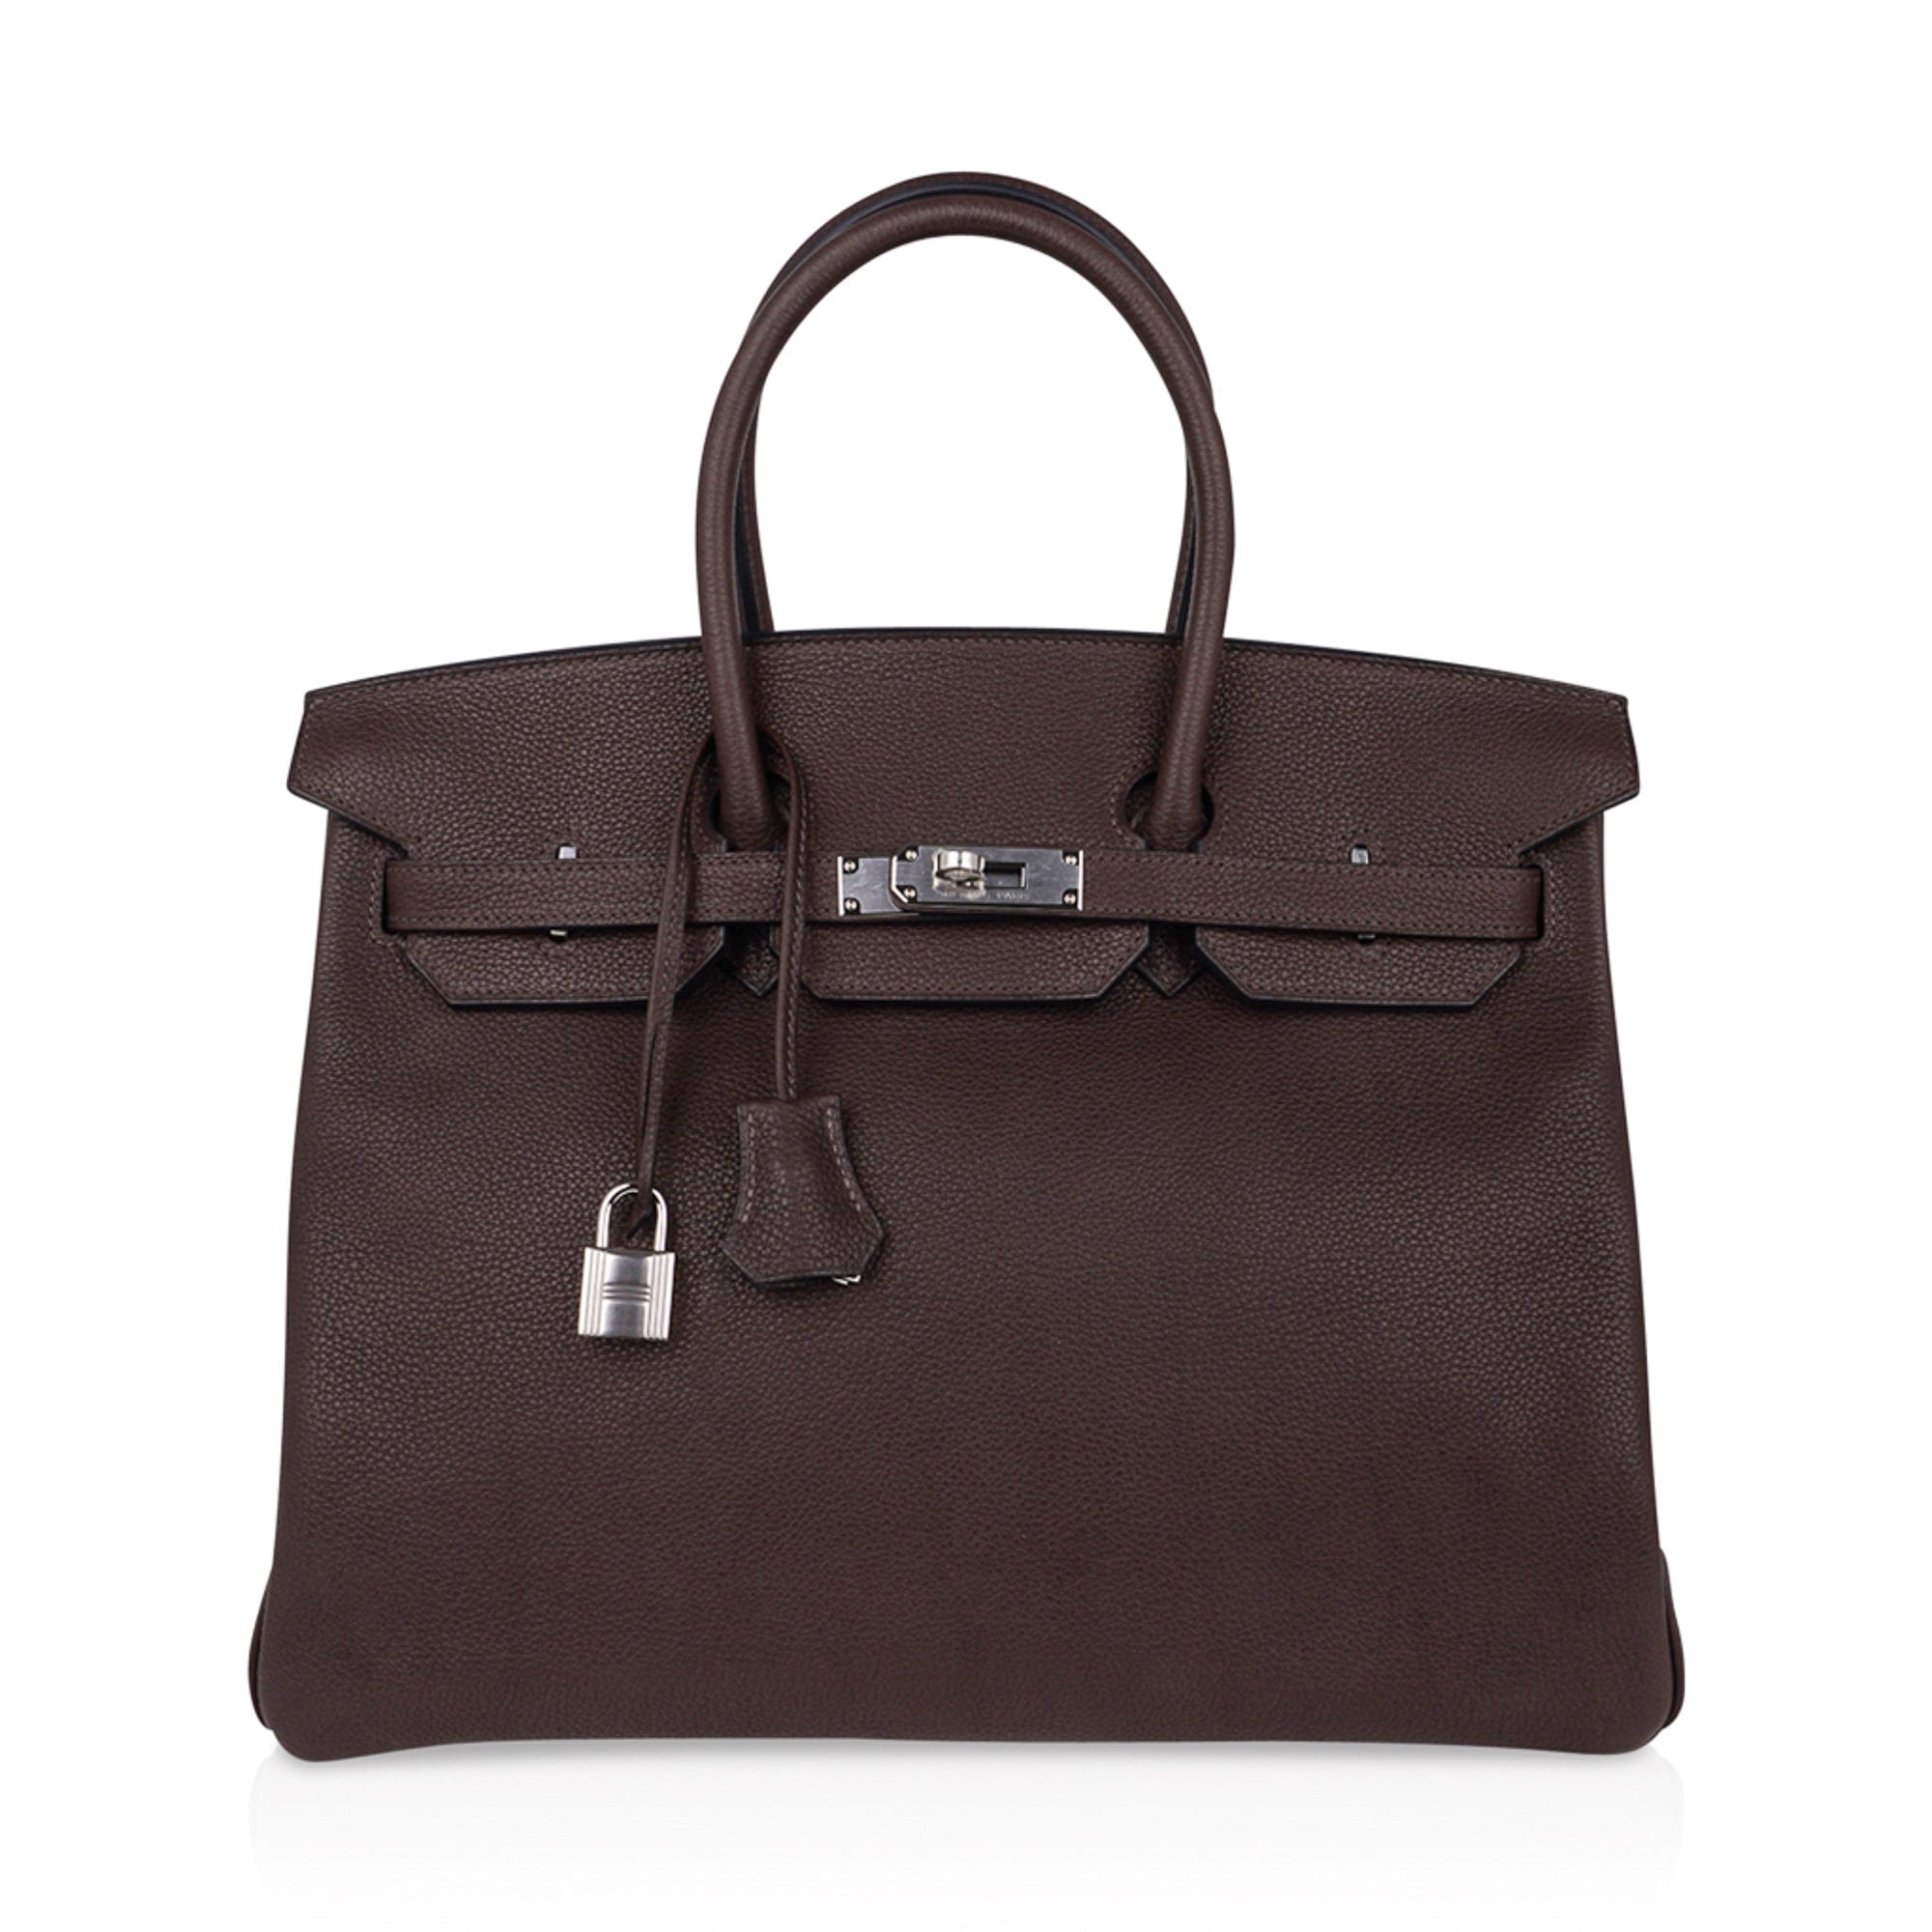 Hermès - Birkin 35 - Ebene Barenia Faubourg - GHW - Brand New